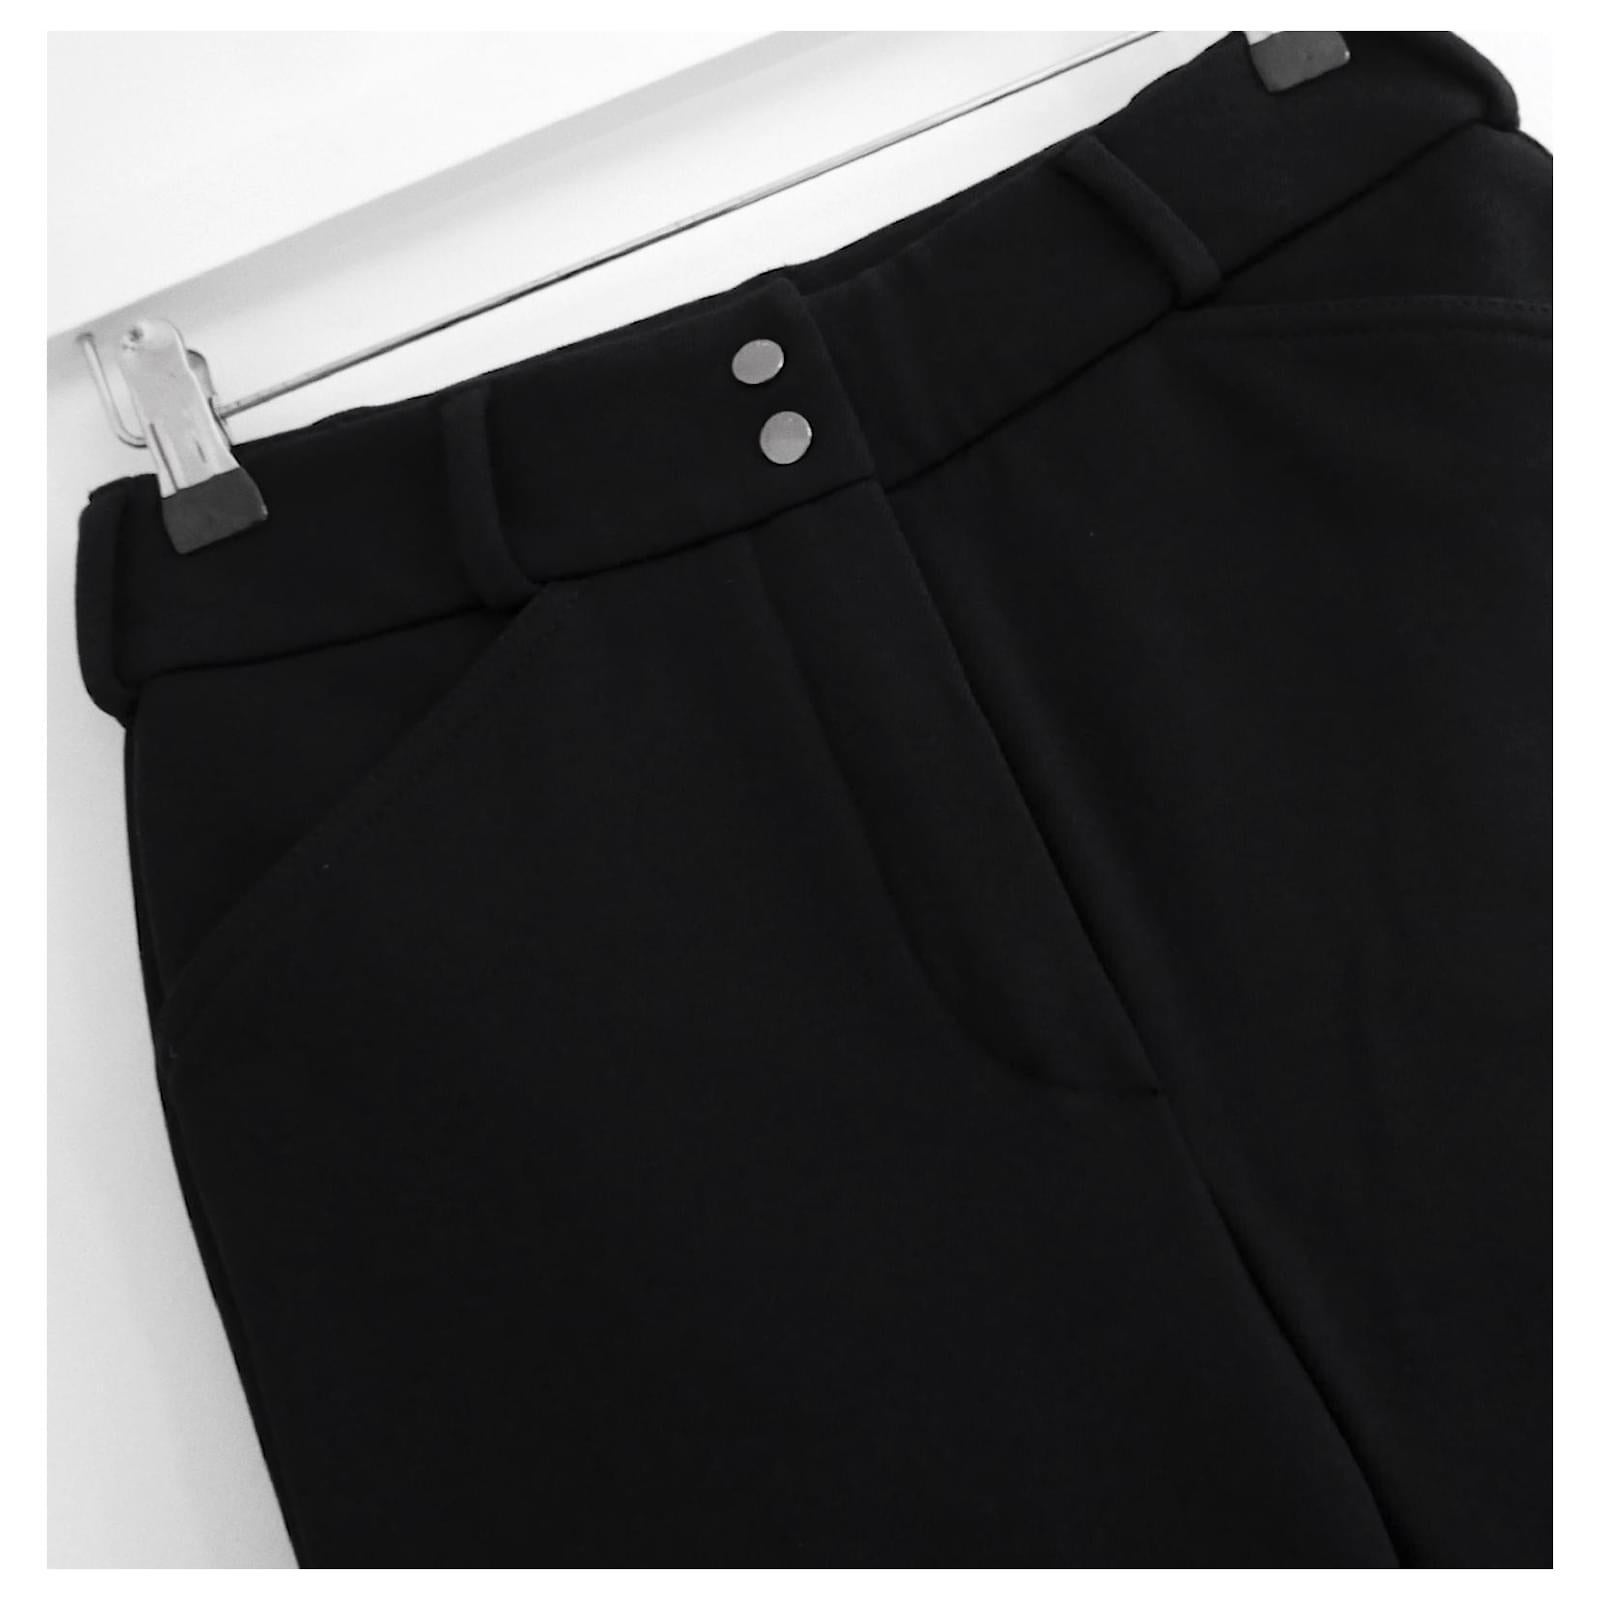 Modèle actuel de pantalon Lucien de Loro Piana. Acheté pour £895 et neuf avec étiquette. Fabriqué en polyamide et laine côtelés noirs de poids moyen, avec un intérieur brossé super doux et chaud. Ils ont des jambes fines avec des ourlets effilés à